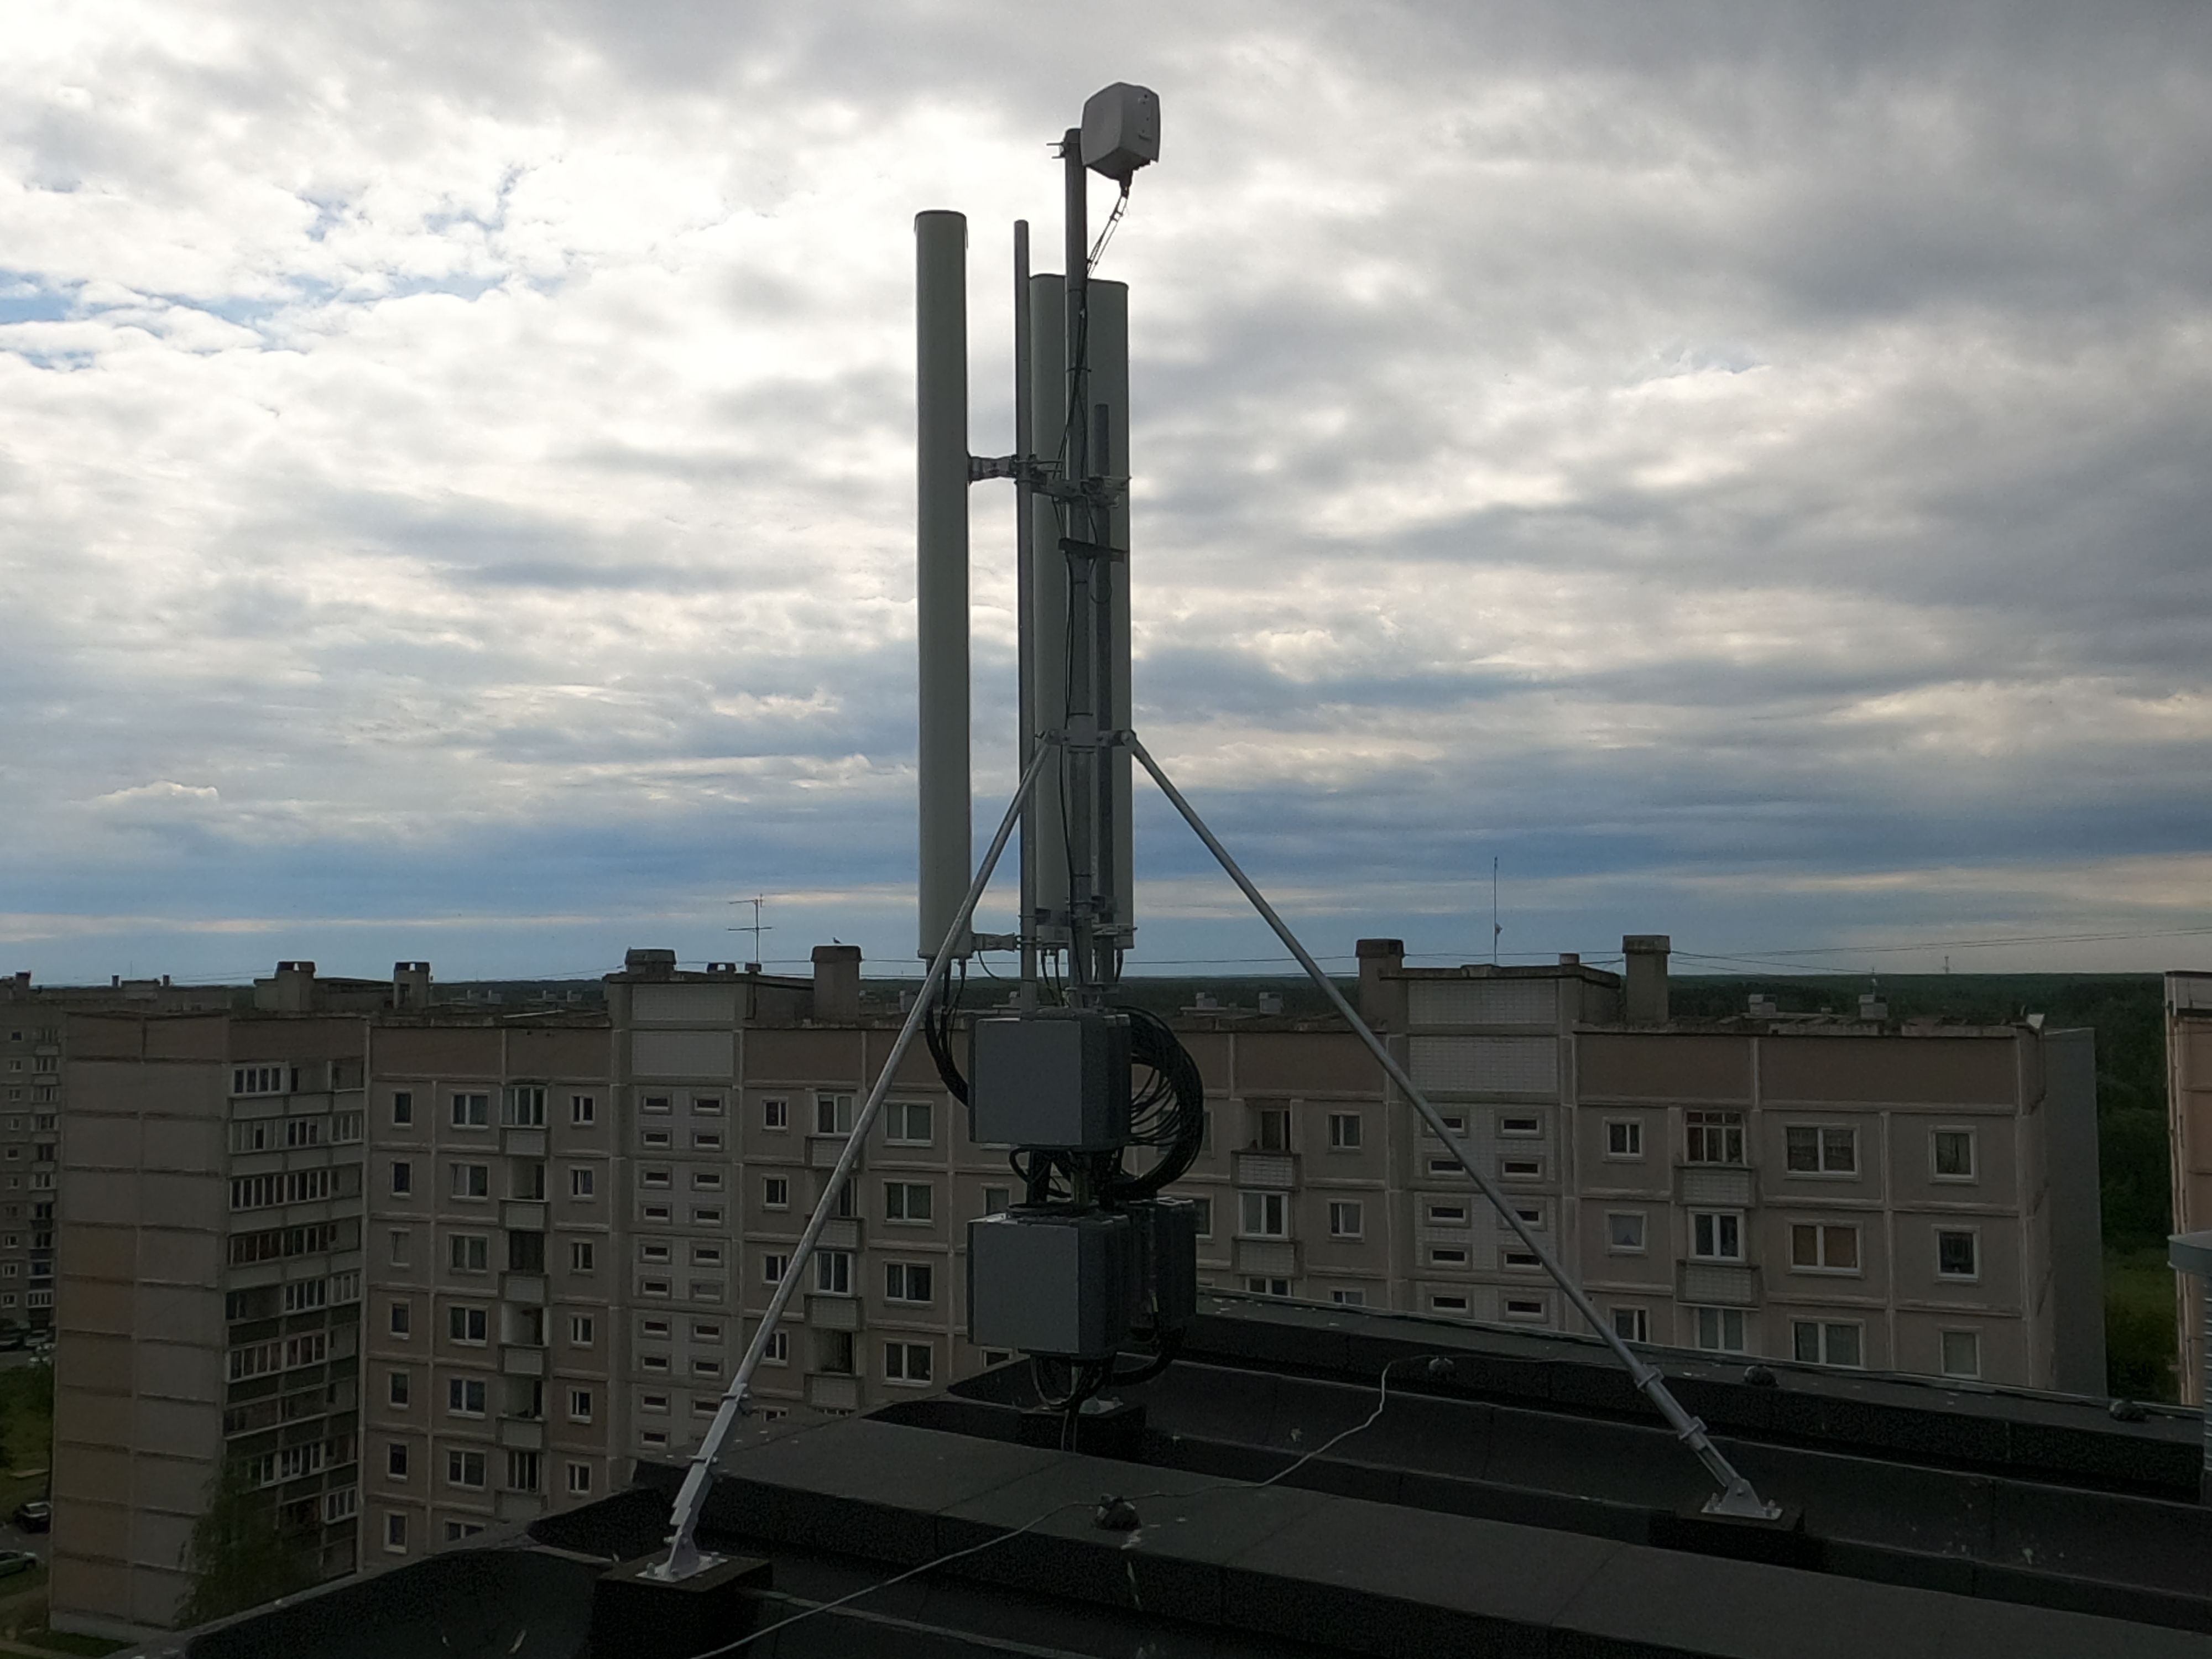 Tā izskatās TELE2 antena uz mājas jumta Īslīces ielā 5. Katru mēnesi māja saņem no operatora 350 eiro